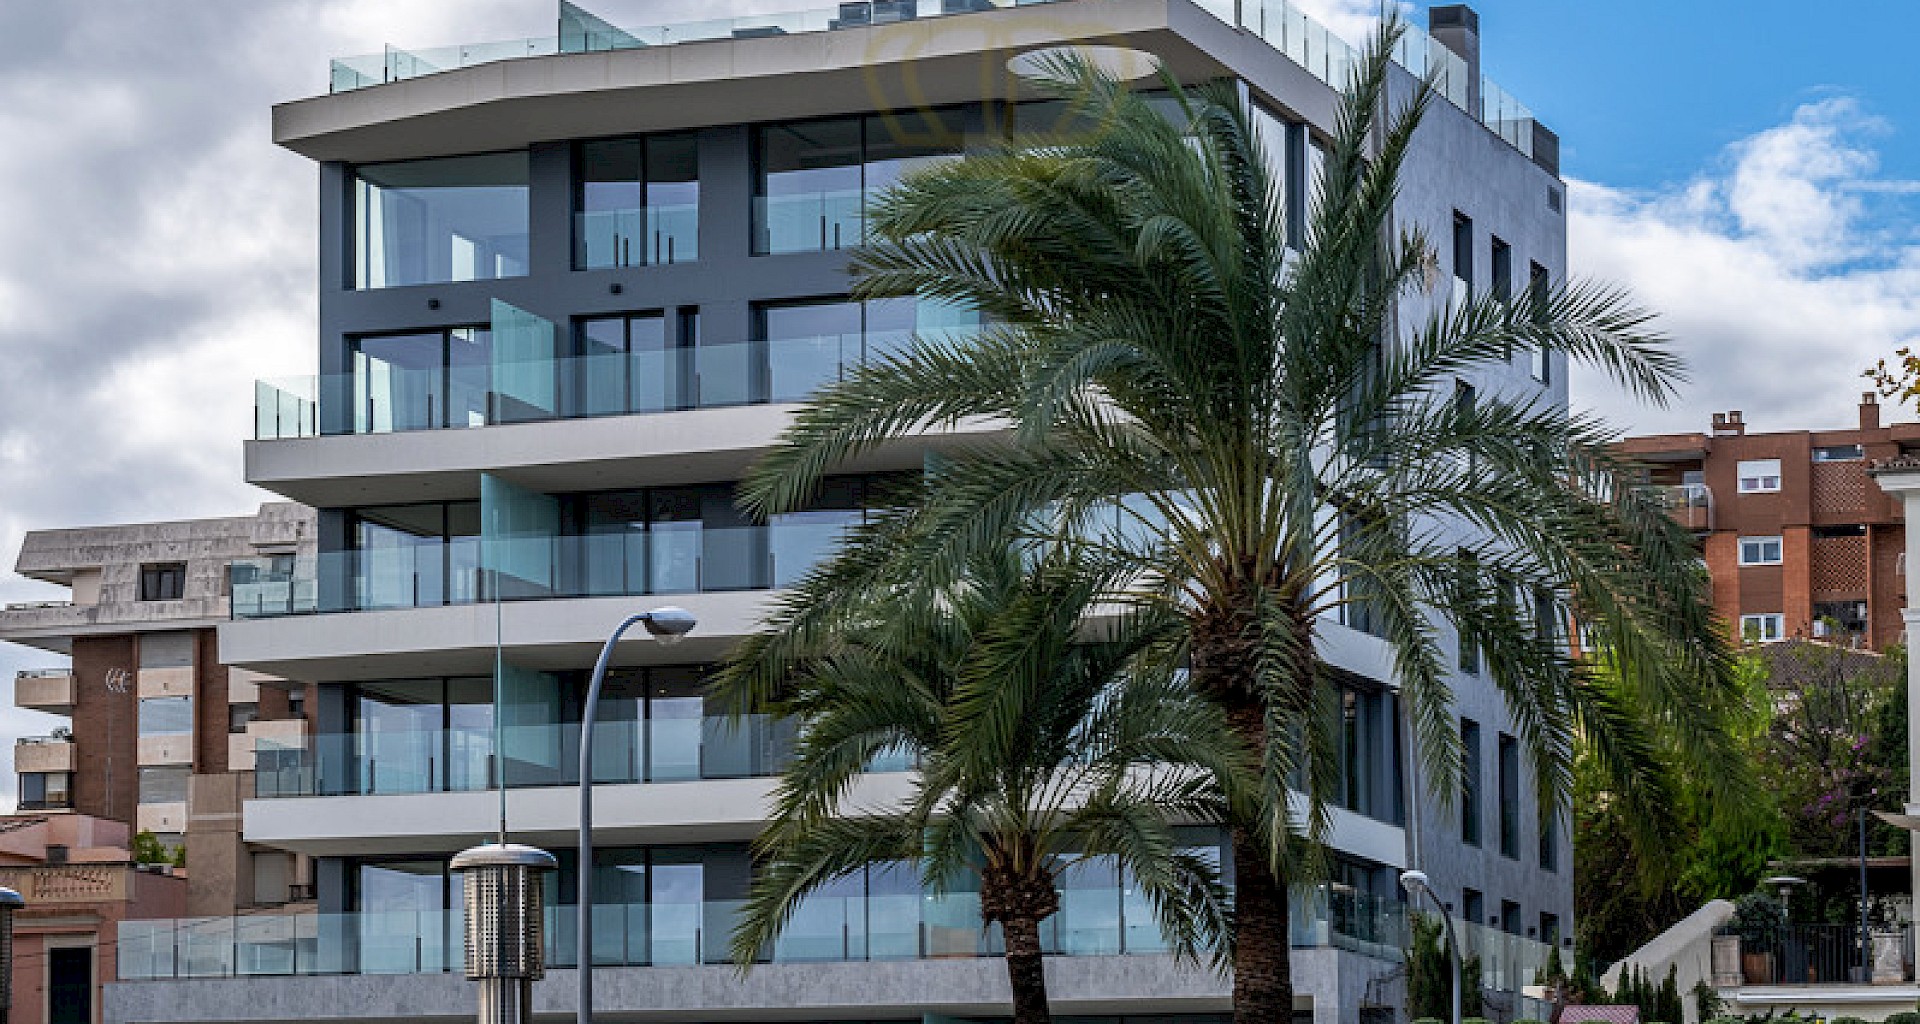 KROHN & LUEDEMANN Exclusivo piso de nueva construcción en Palma de Mallorca en el Paseo Marítimo con vistas al puerto Moderne Luxus Apartments Palma Hafen